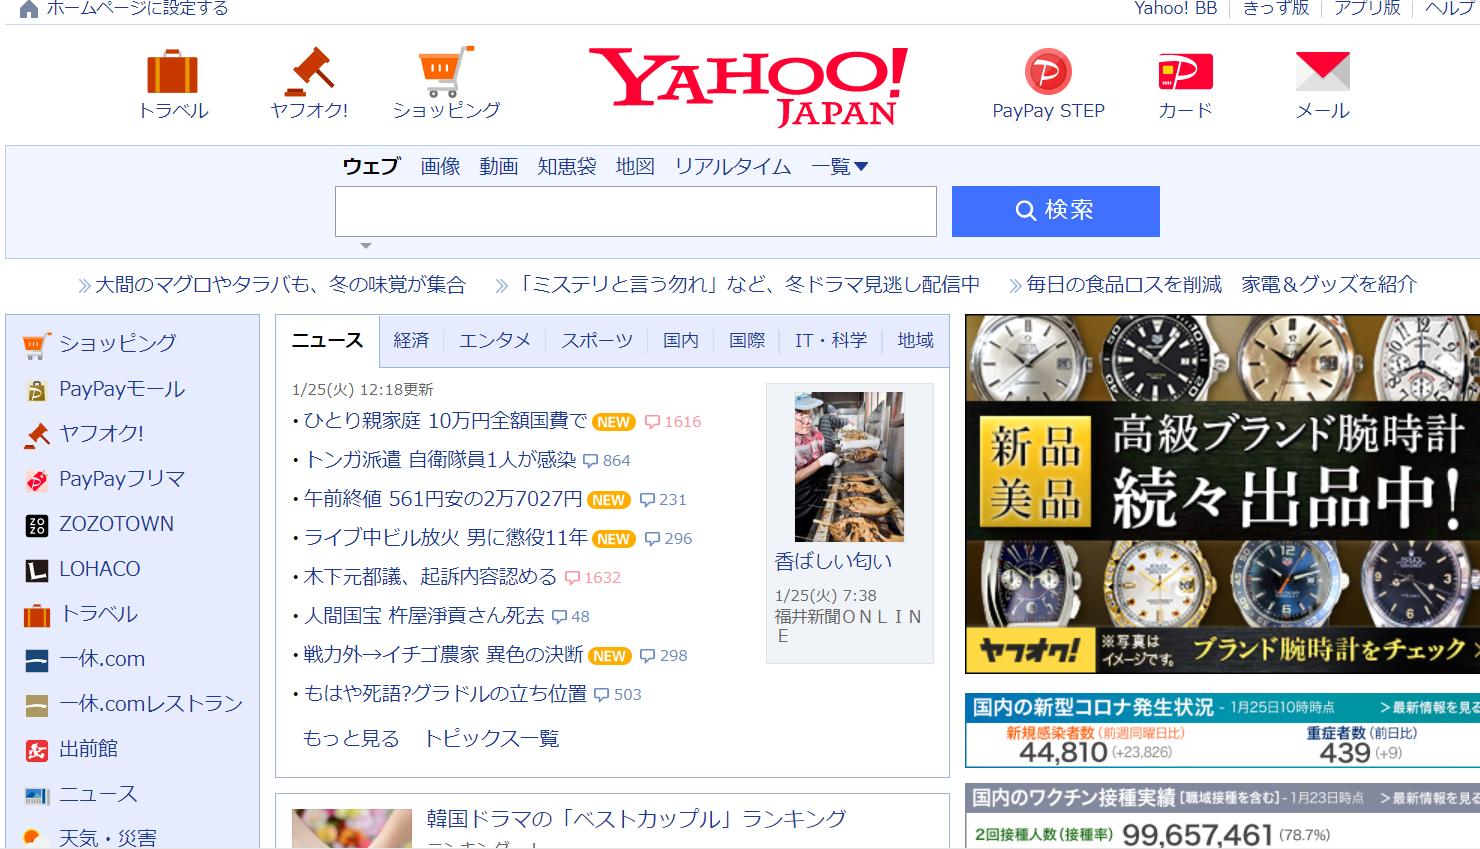 Vì Sao Yahoo Vẫn Sống Khỏe Ở Nhật Bản?